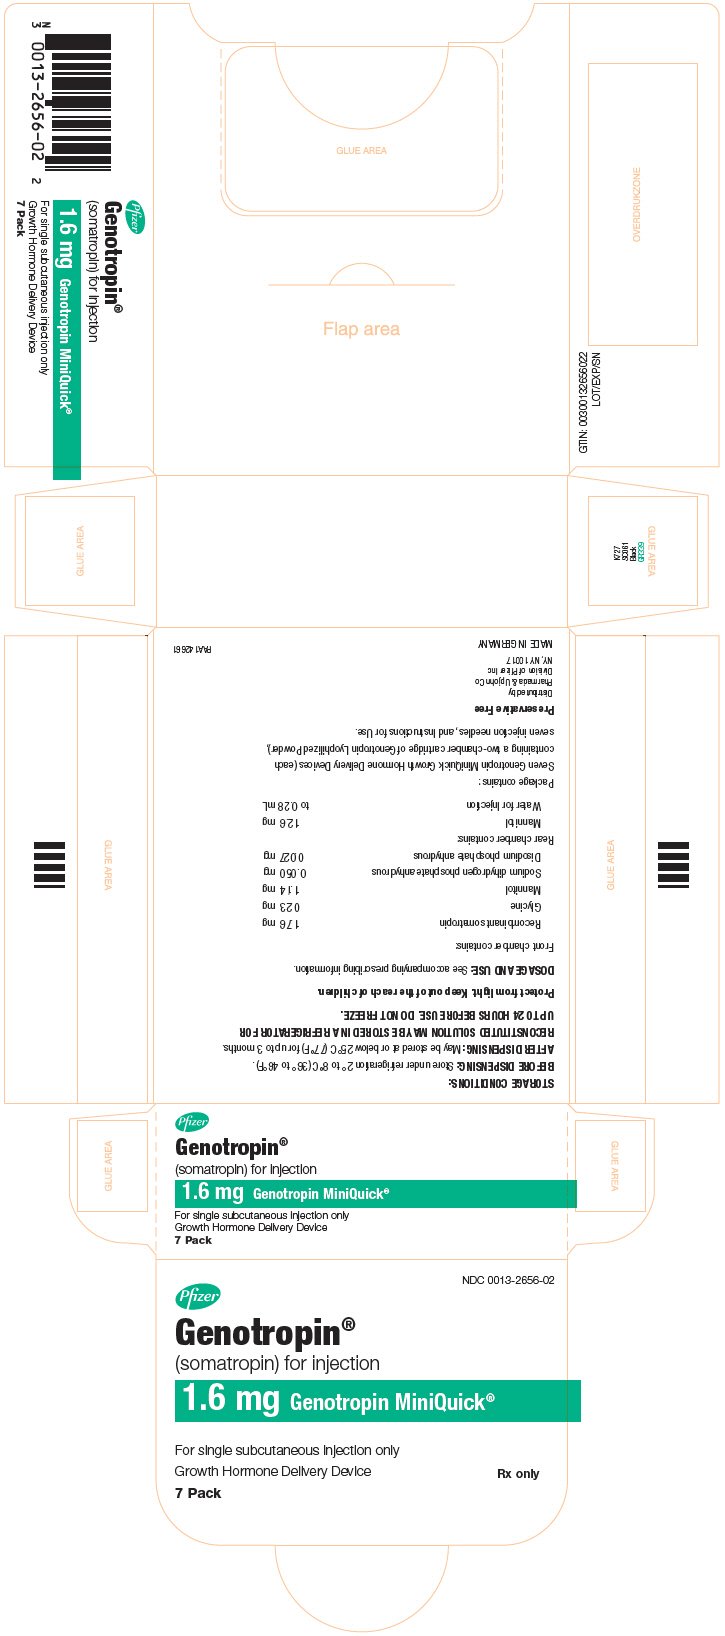 Principal Display Panel - 1.6 mg Kit Carton